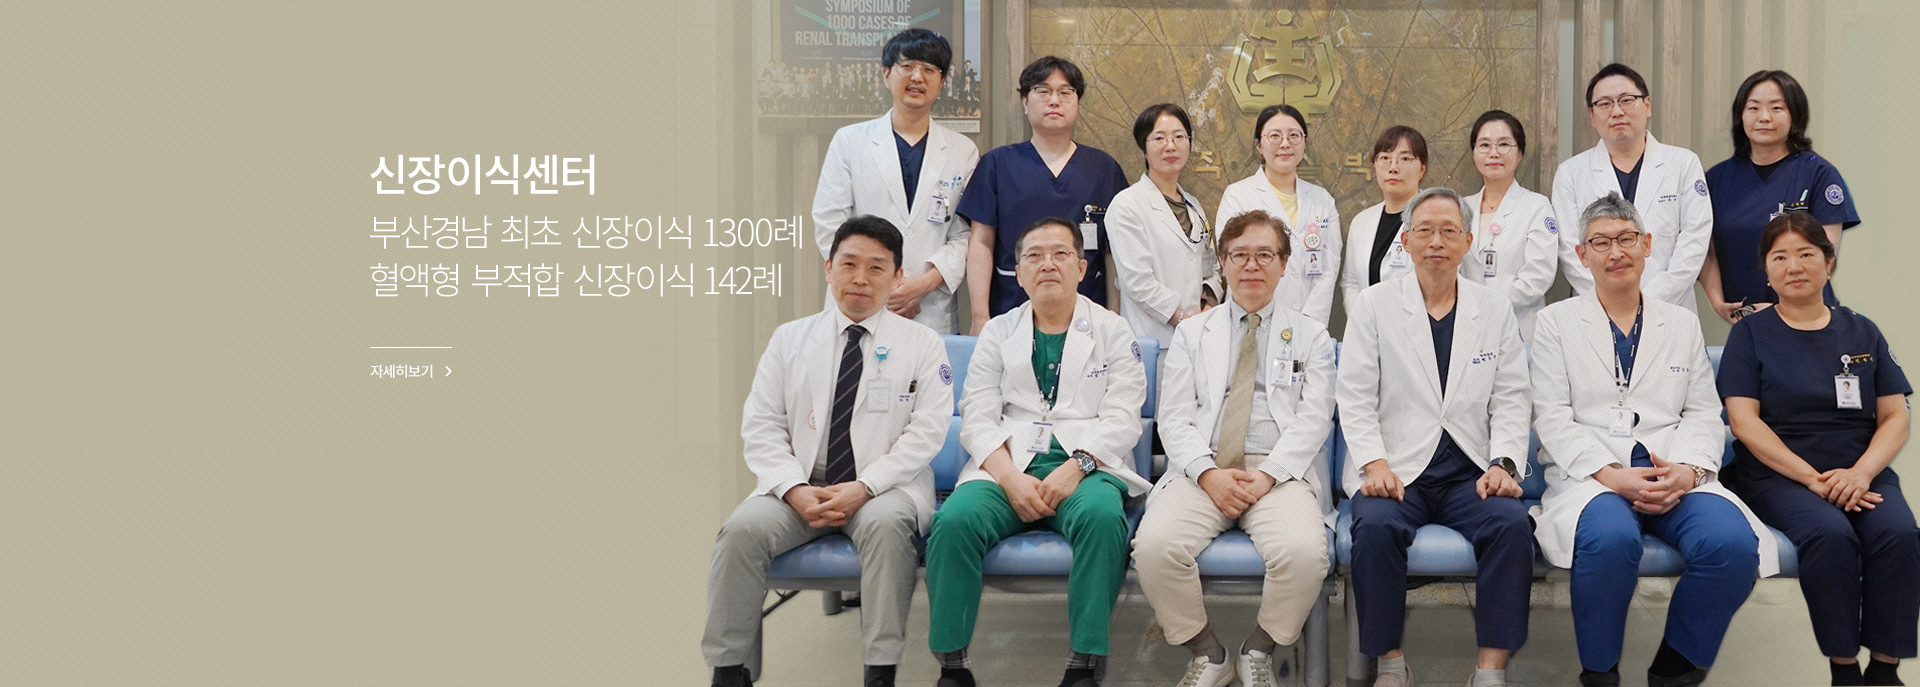 신장이식센터, 부산경남 최초 신장이식 1300례 혈액형 부적합 신장이식 142례, 자세히 보기